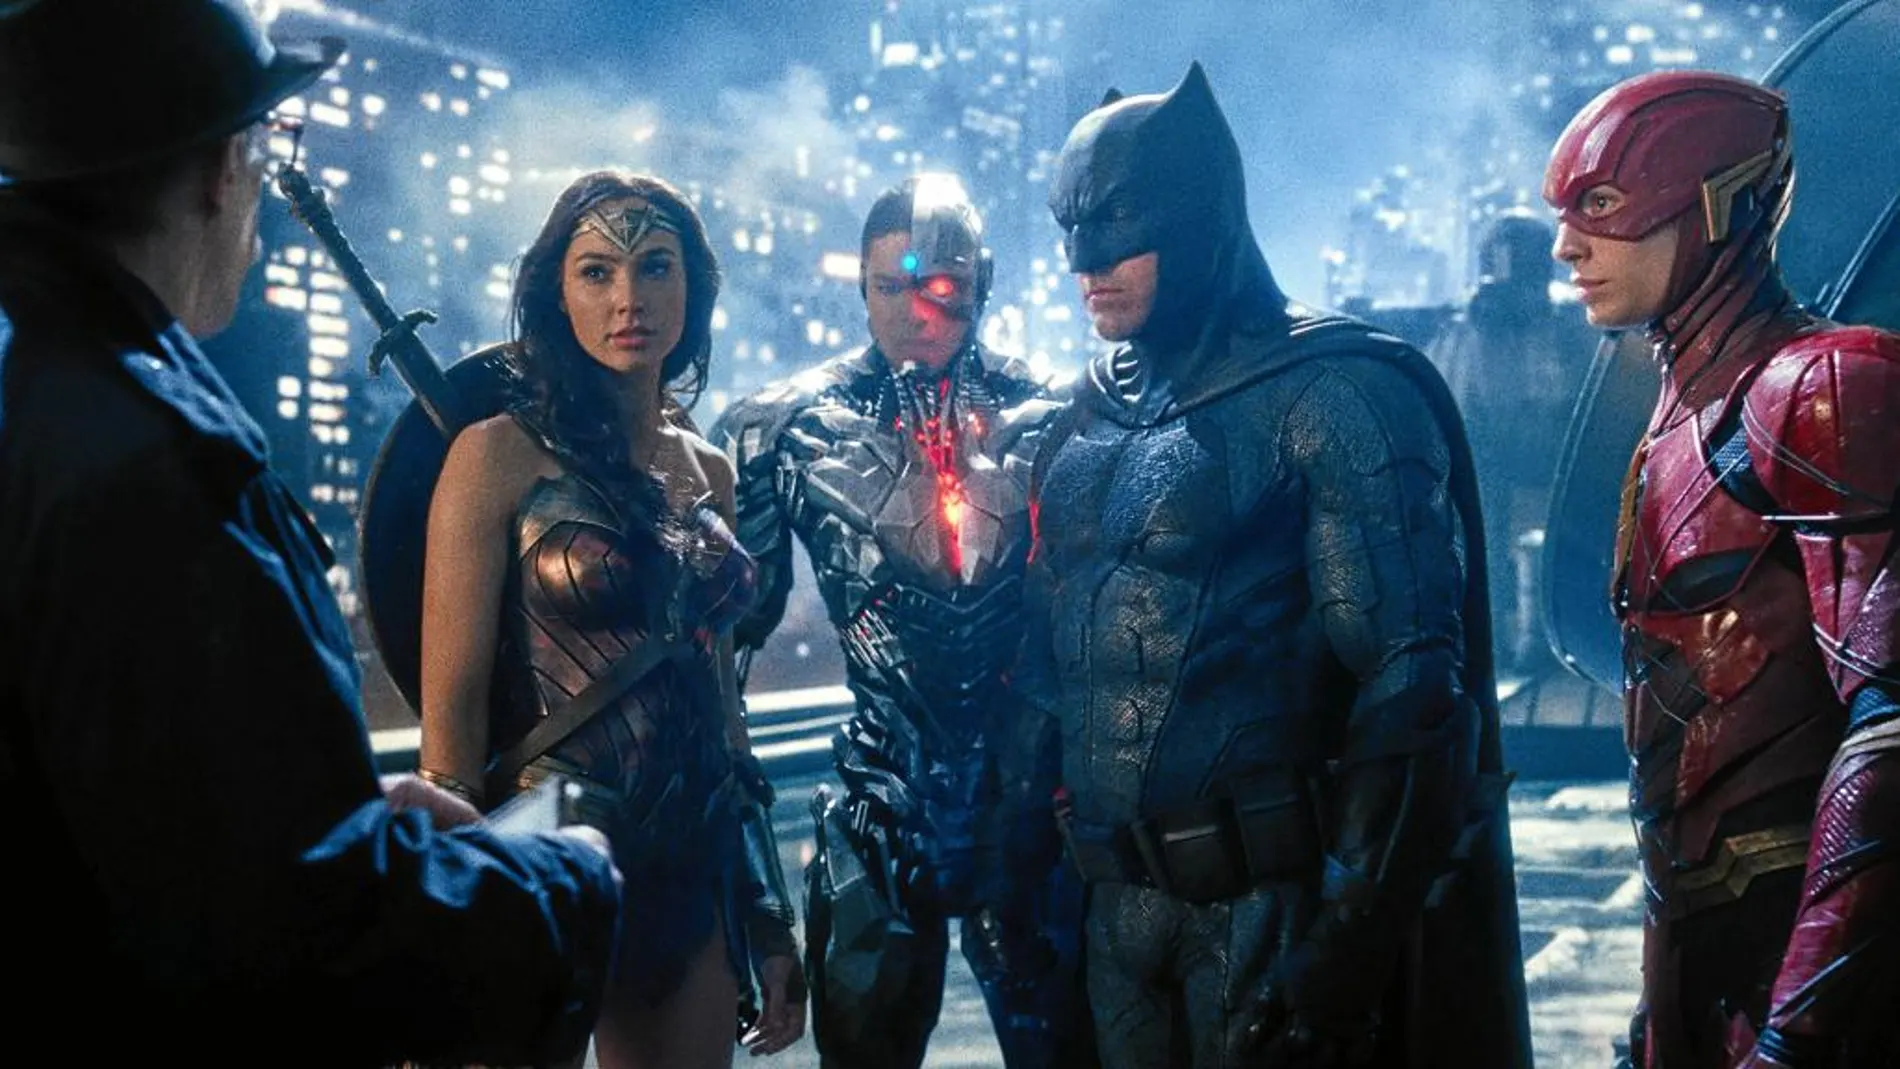 De izquierda a derecha, Wonder Woman, Cyborg, Batman y Flash, en una imagen del filme